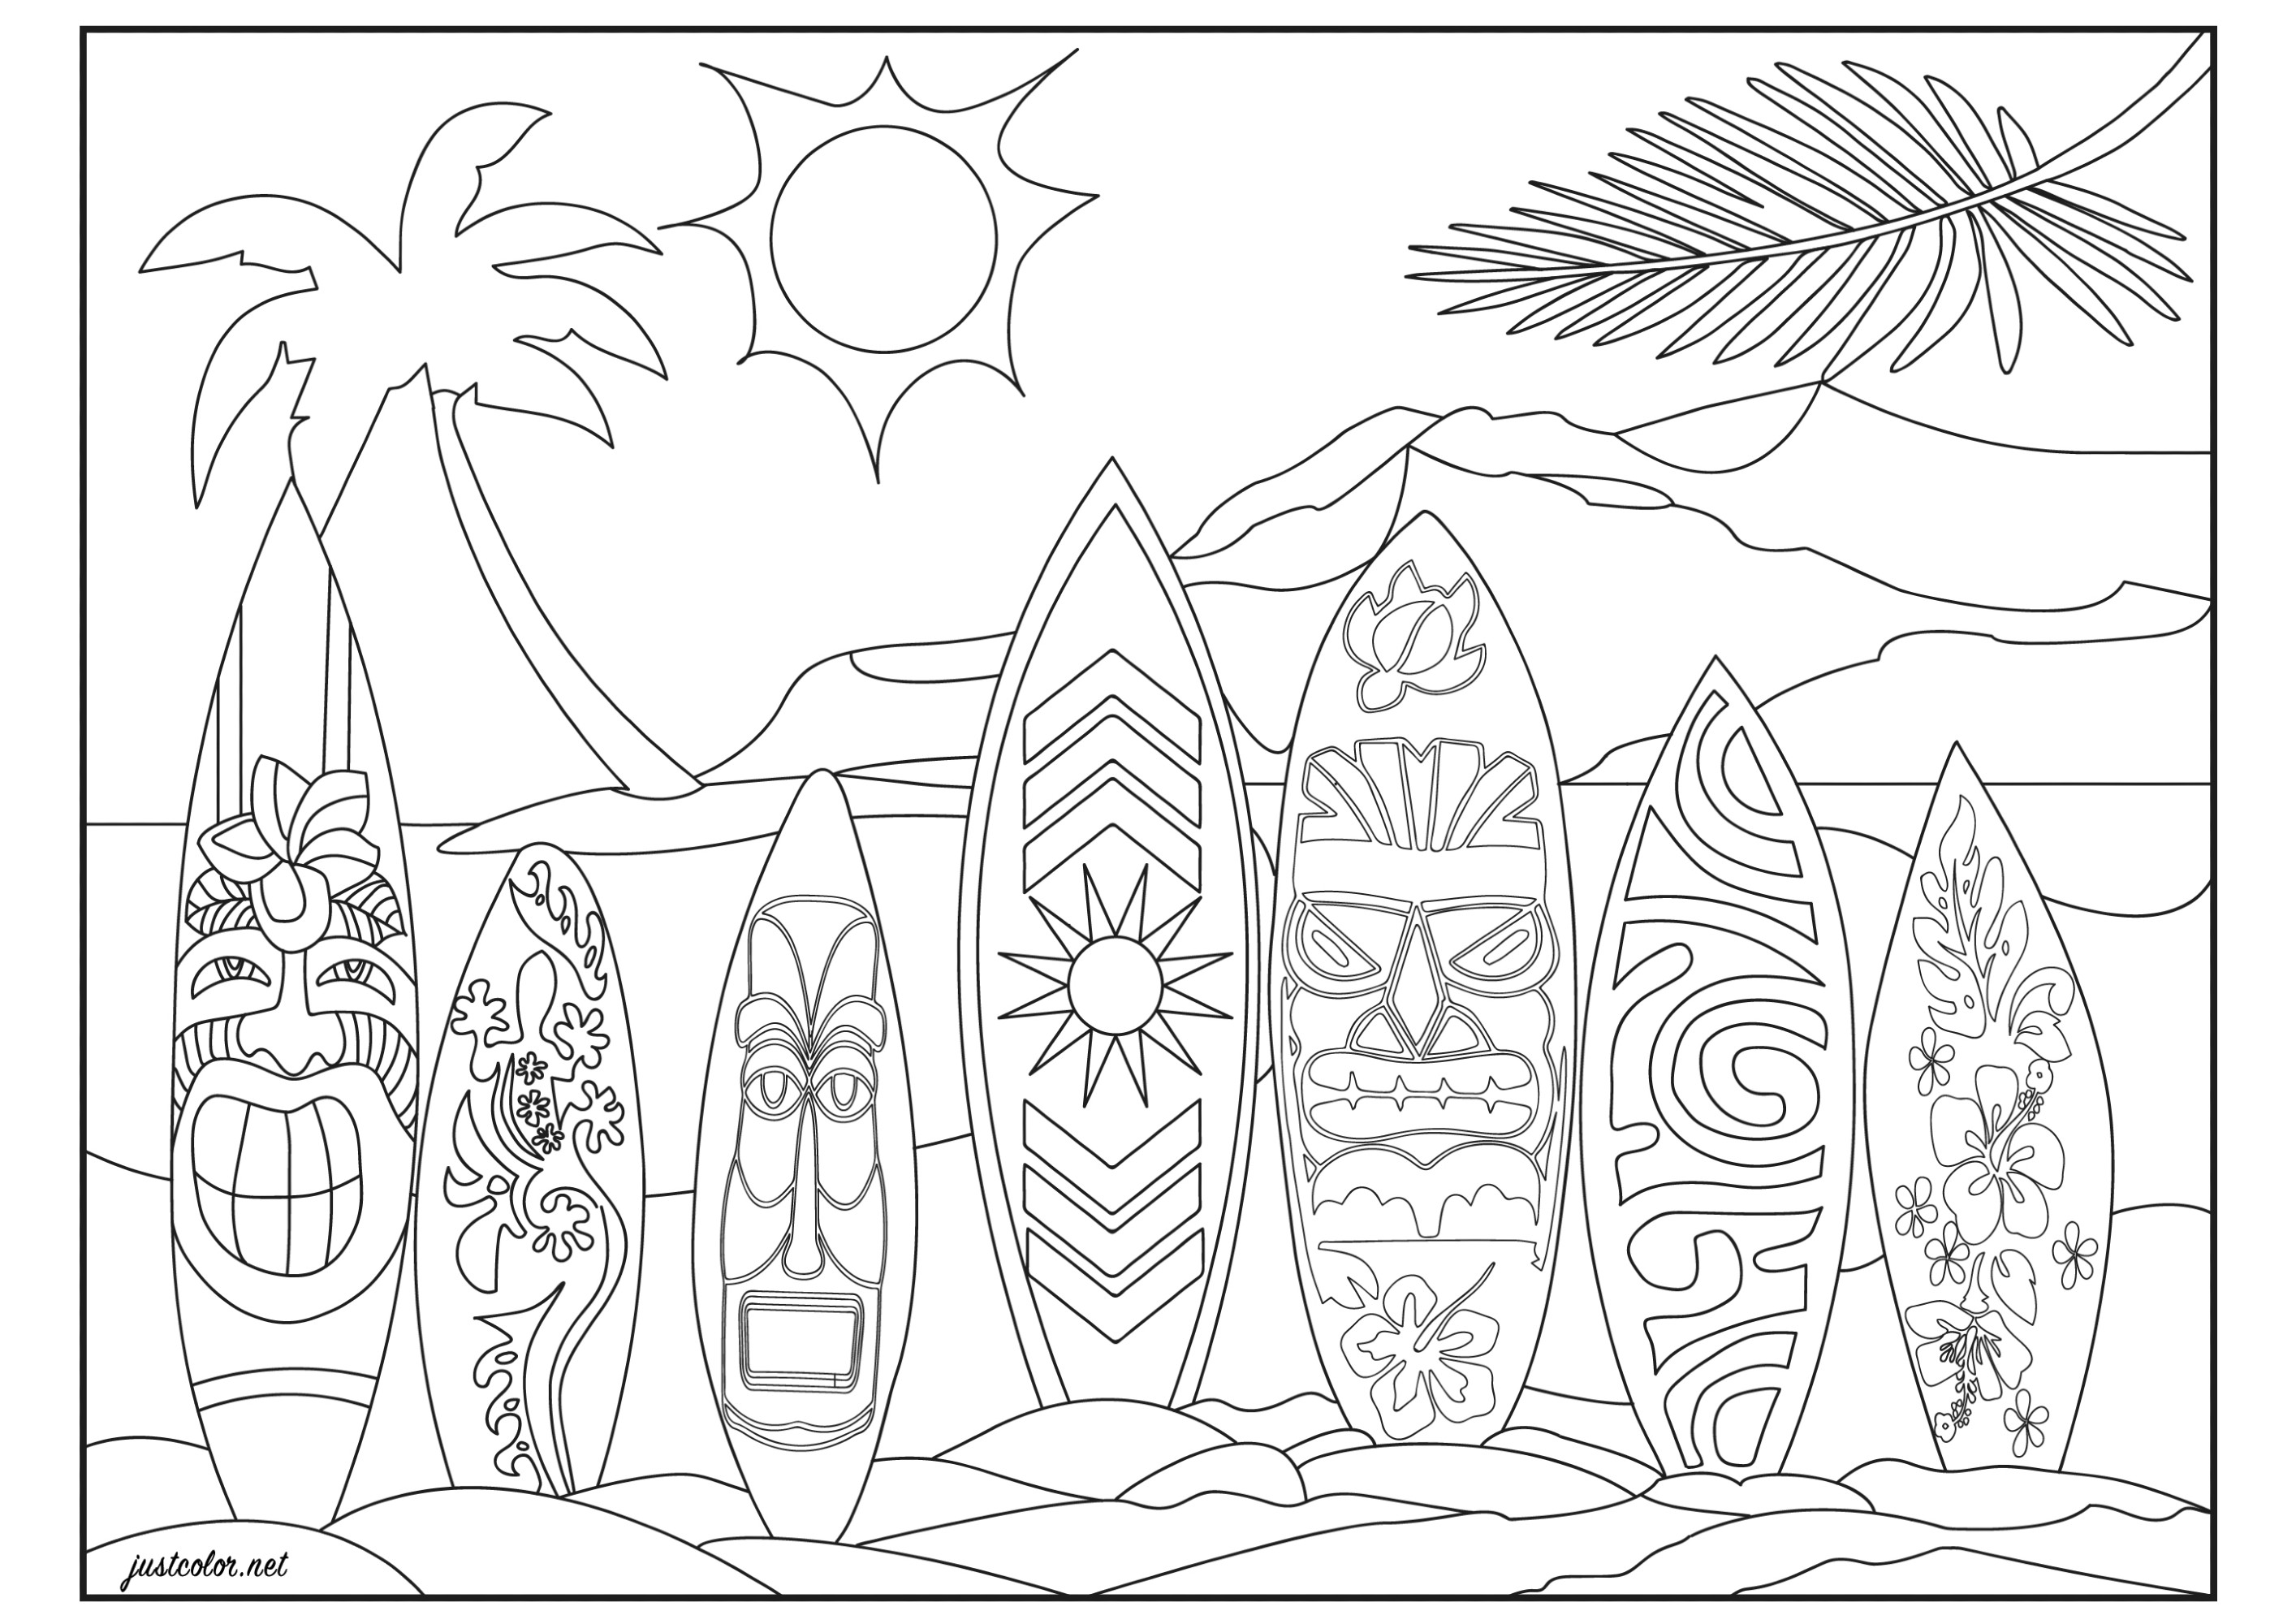 Numa praia em Honolulu (Havai, Pacífico). Alinhamento de pranchas de surf com motivos tribais havaianos, maoris, vintage e florais (flores de hibisco tropicais). Pronto para surfar a onda perfeita?
